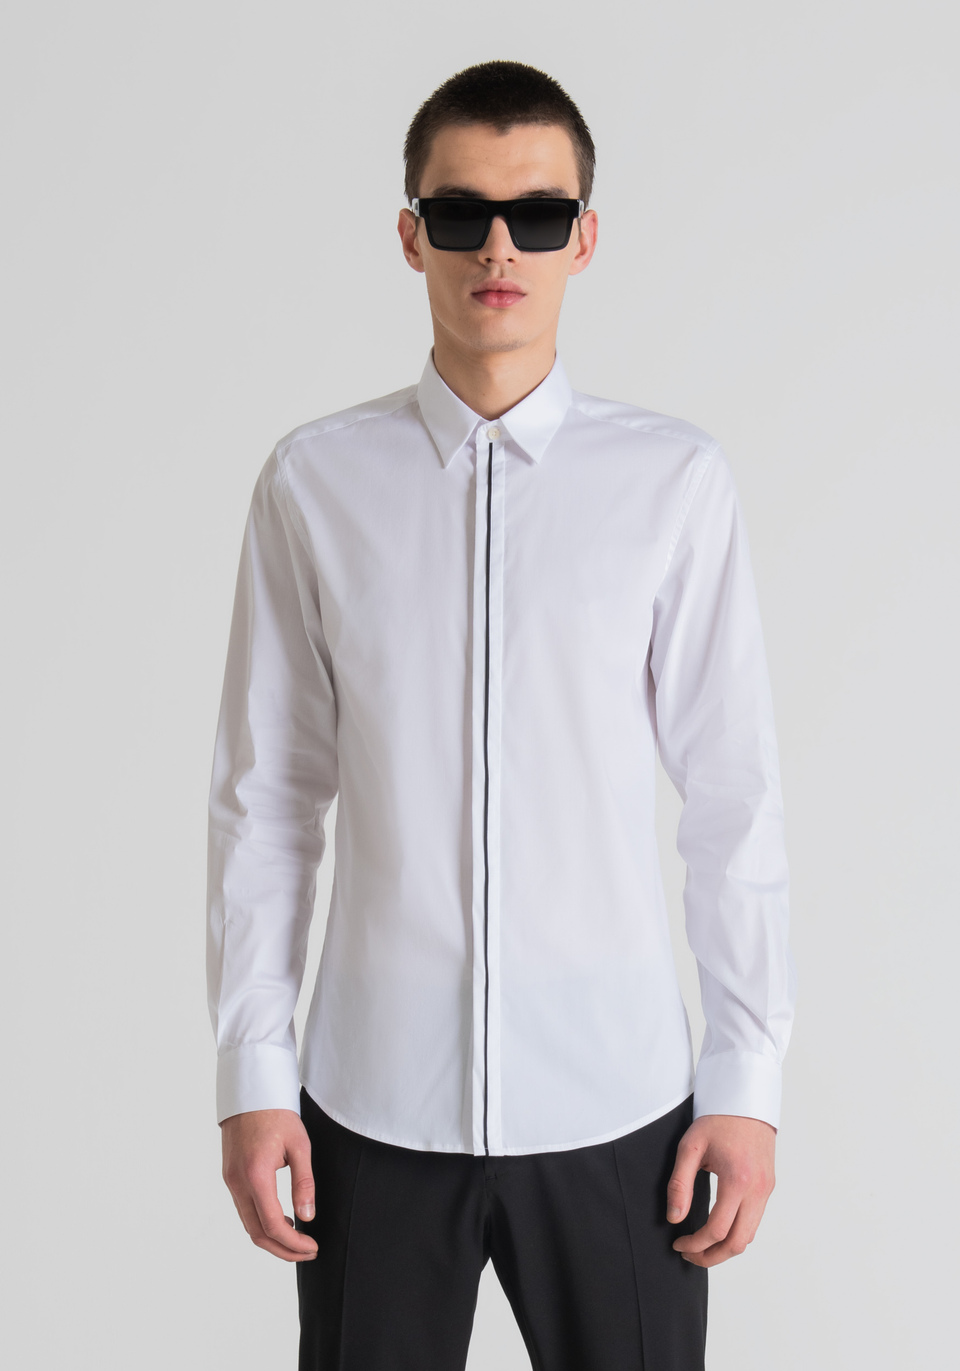 Camicia slim fit in cotone elastico - Antony Morato Online Shop